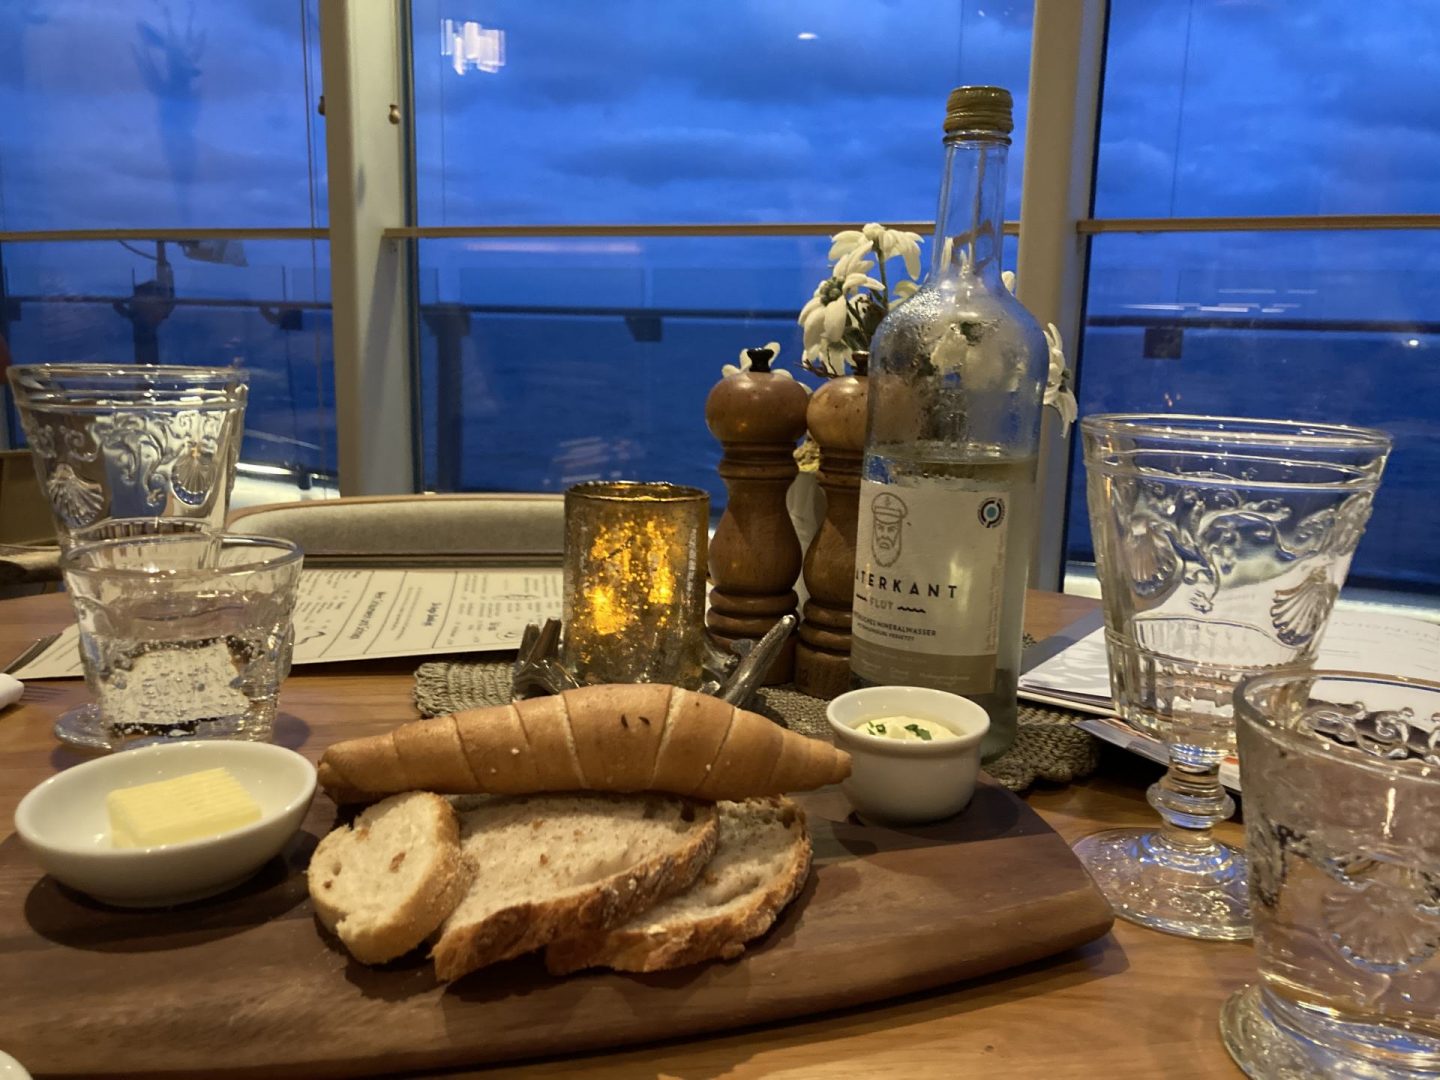 Erfahrung Bewertung Kritik Restaurant Schmankerl TUI Cruises Mein Schiff 5 Foodblog Sternestulle